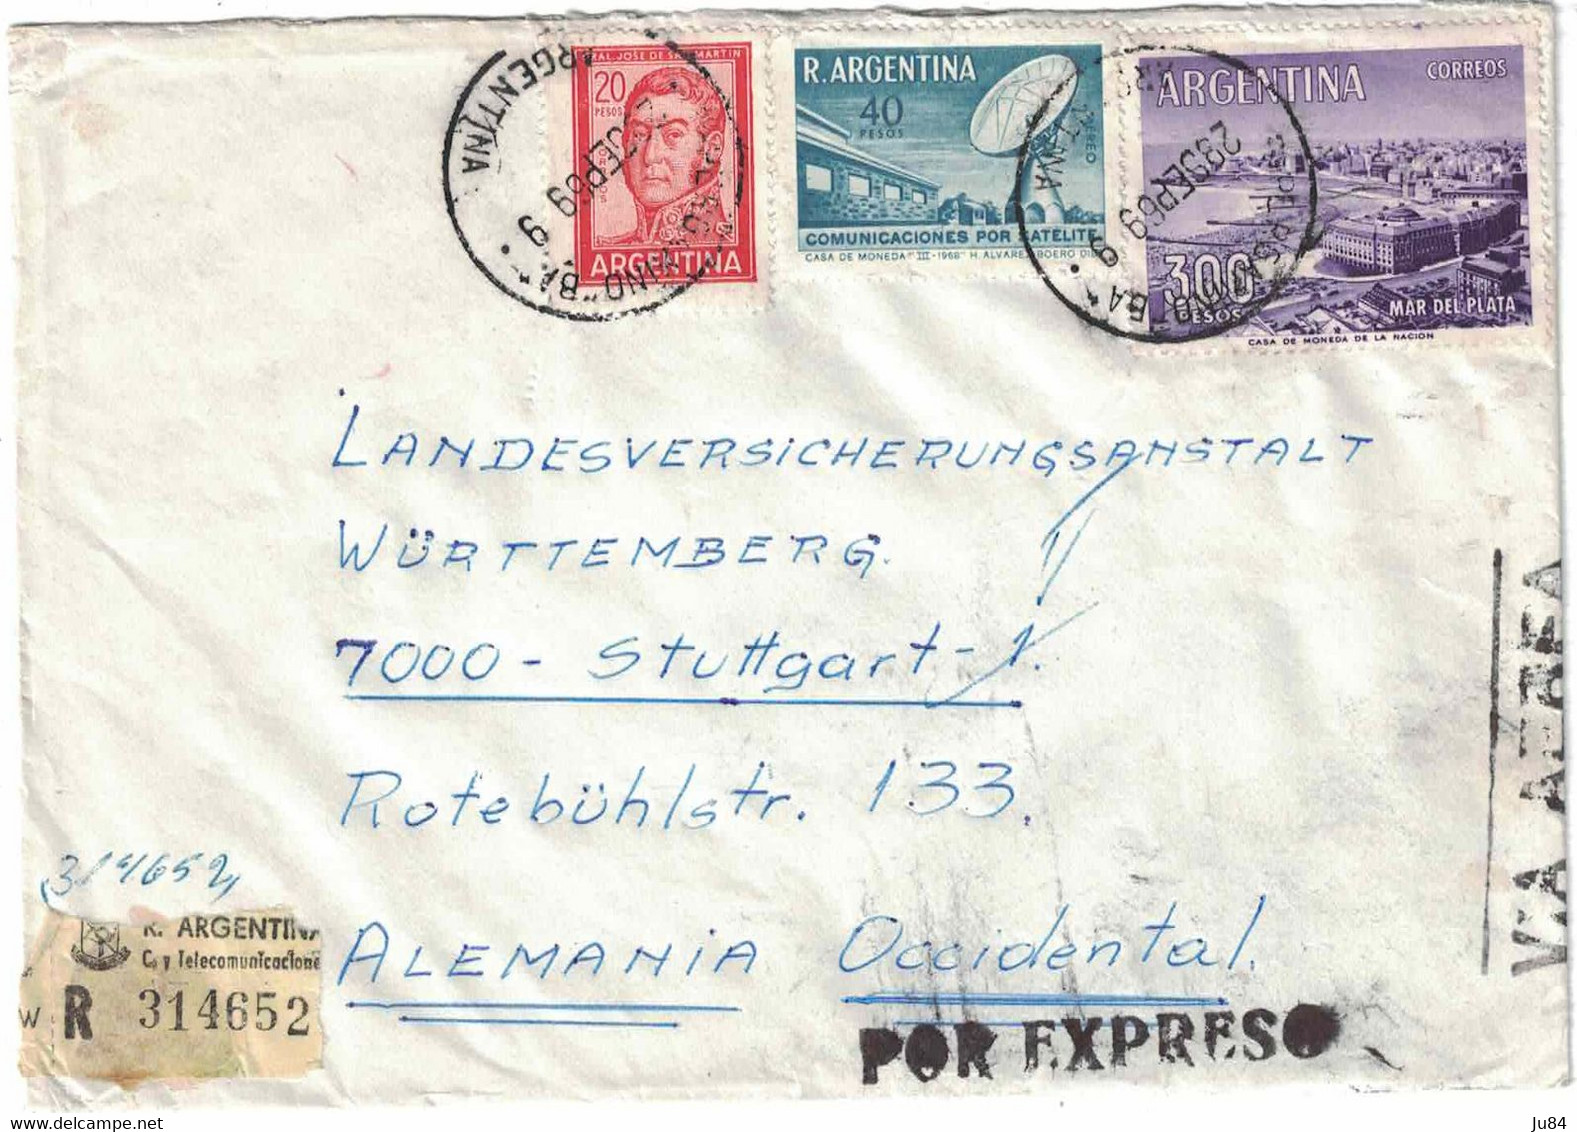 Argentine - Pergamino - Lettre Recommandée Express - Pour L'Allemagne - Stuttgart - 28 Septembre 1969 - Gebraucht